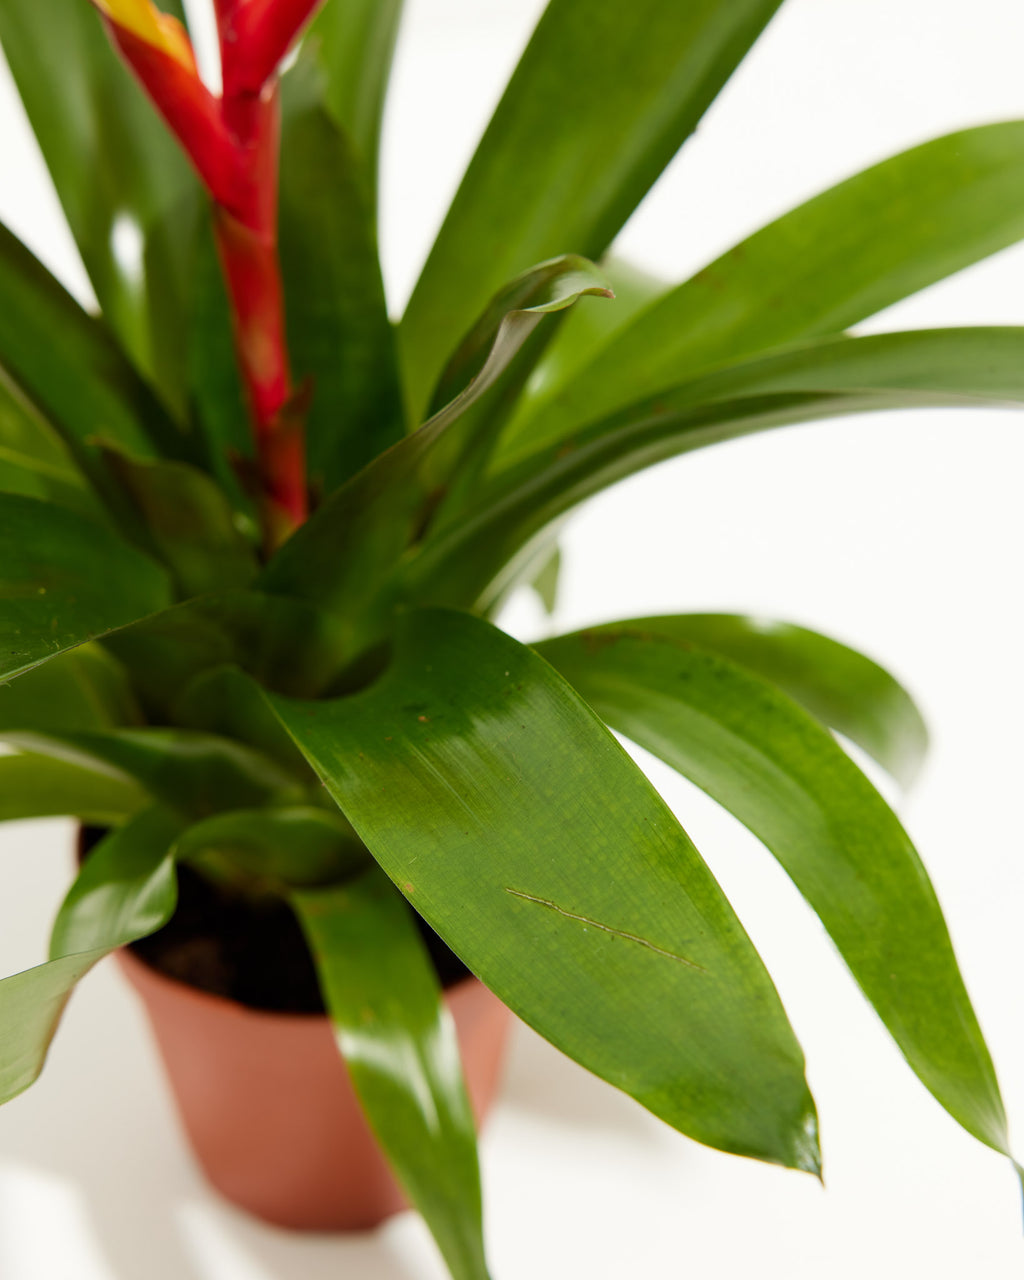 Red | & Indoor Evita Vriesea | Plants Bromeliad Yellow |